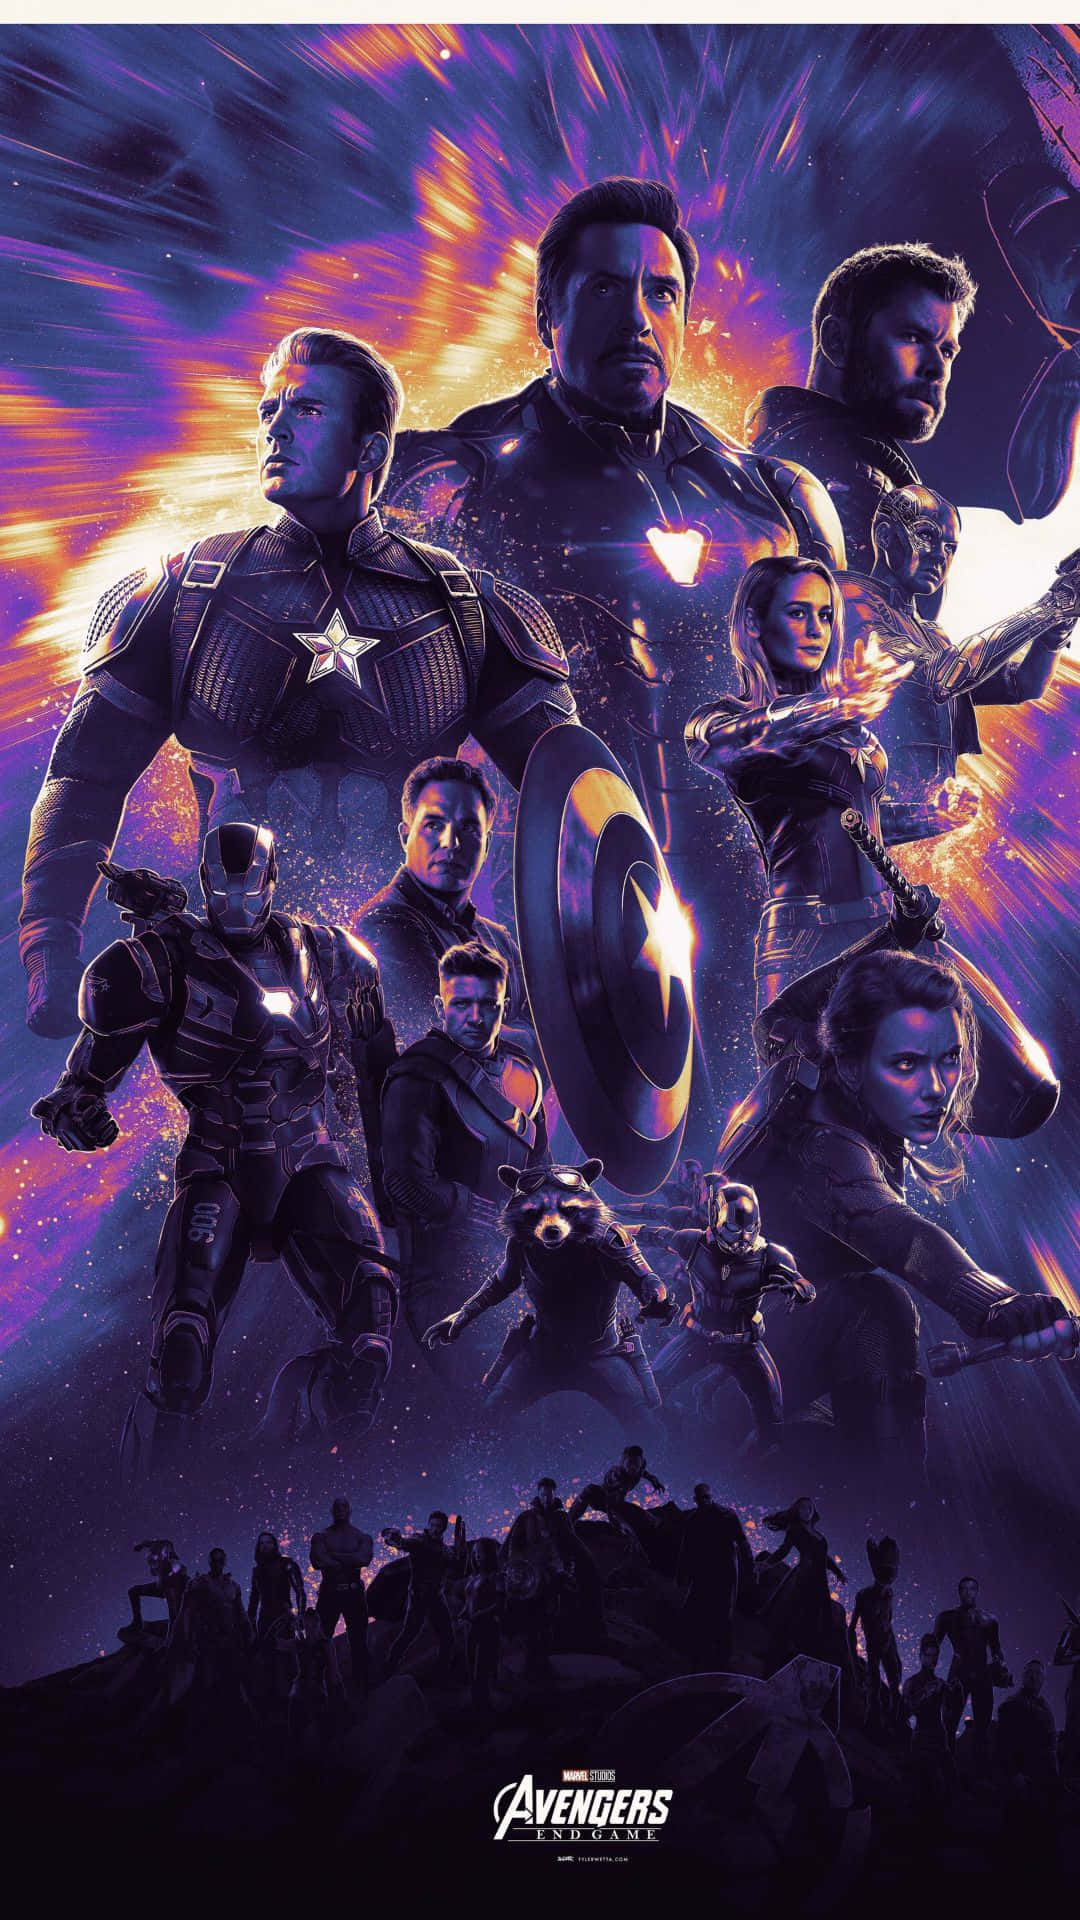 Ottienilo Splendido Sfondo Di Avengers: Endgame Sul Tuo Iphone! Sfondo